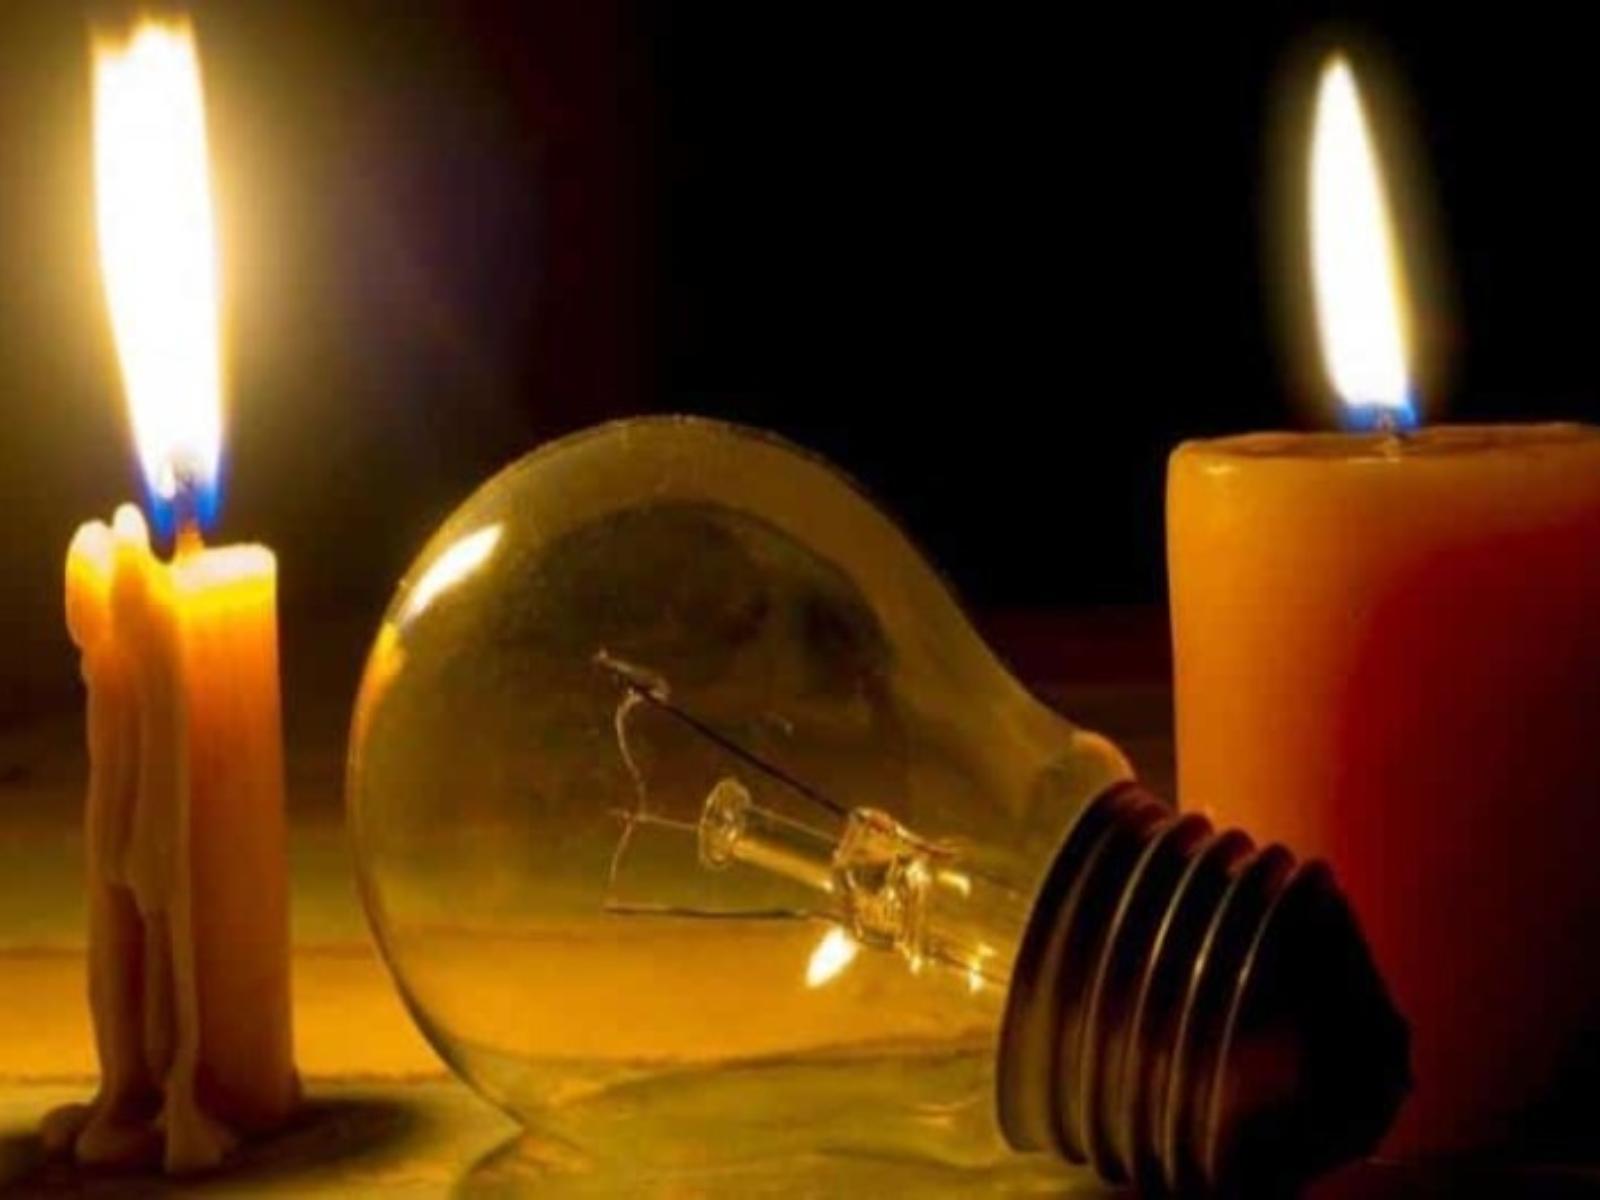 Μείωση ρεύματος: Αυτά είναι τα τρία μέτρα απο την 1η Νοεμβρίου